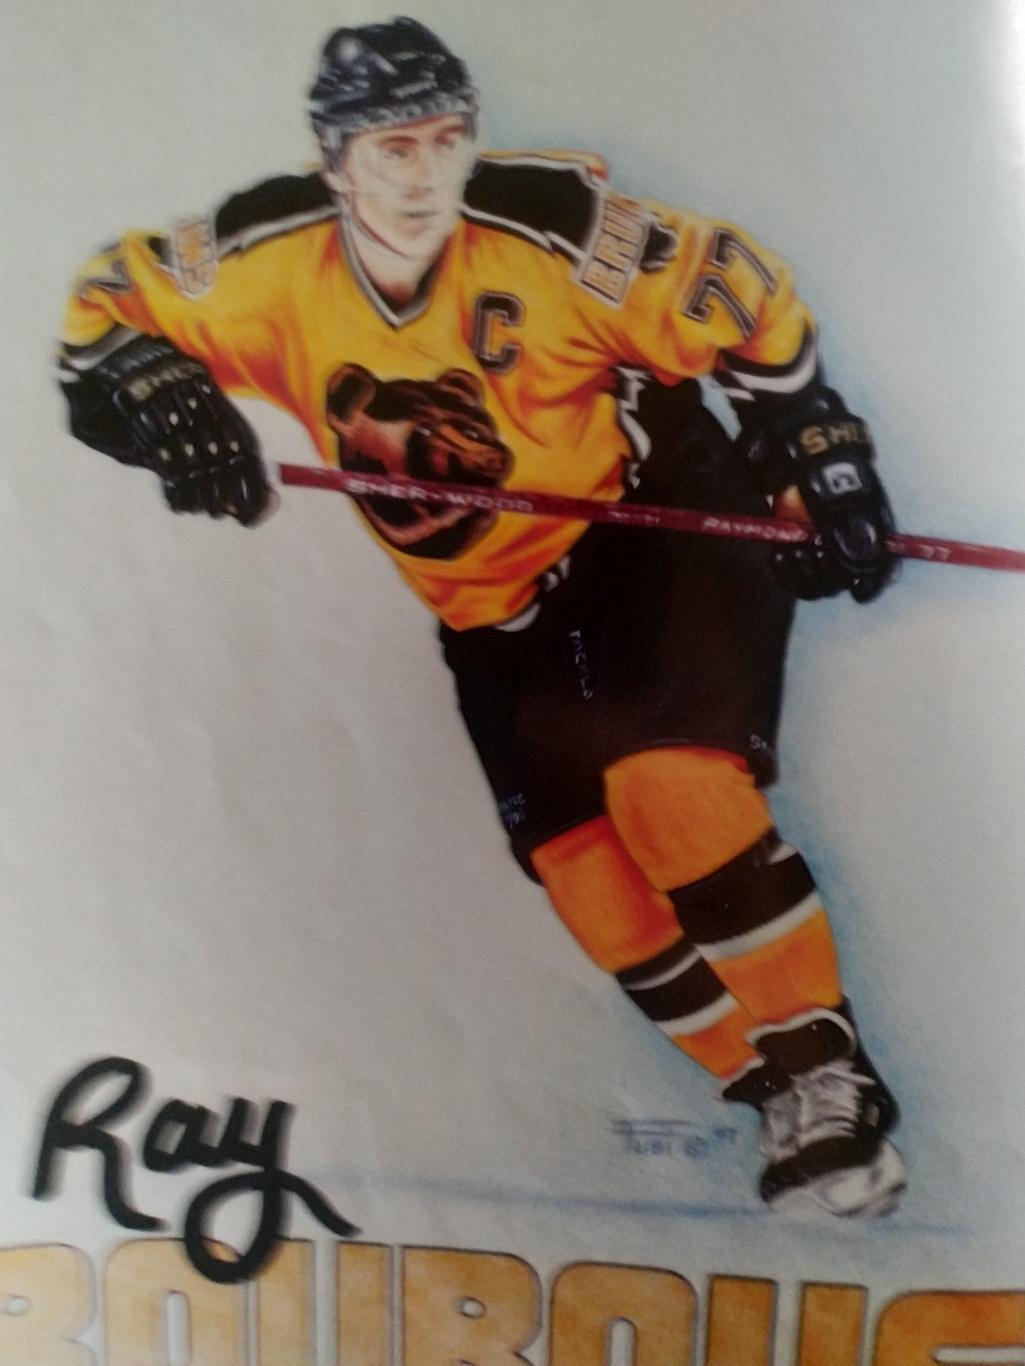 ЖУРНАЛ ЕЖЕМЕСЯЧНИК ХОККИ БЭККЕТ НХЛ NHL 1998 OCT BECKETT HOCKEY MAGAZINE #96 2